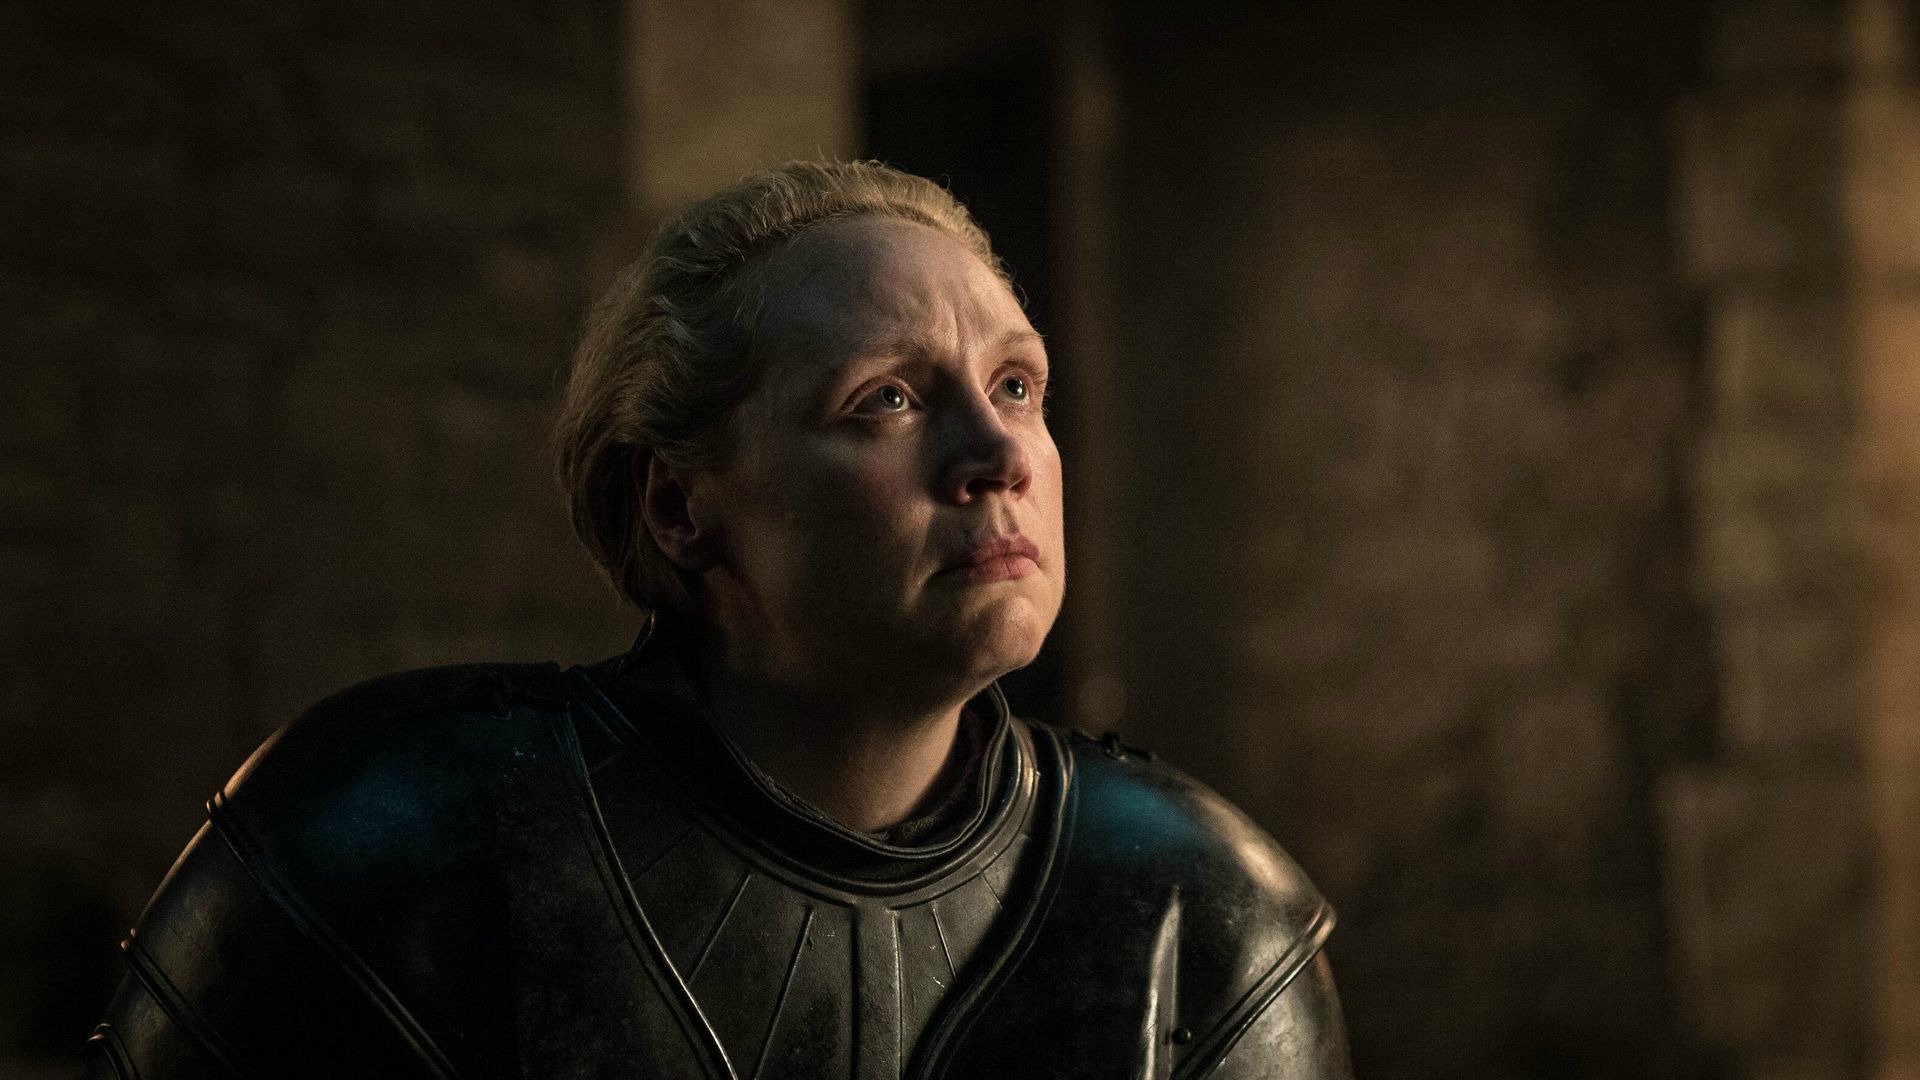 Brienne fue nombrada dama de caballería por Jaime en el segundo episodio de la octava temporada, "Knight of the Seven Kingdoms". | Fotografía por Helen Sloan | HBO